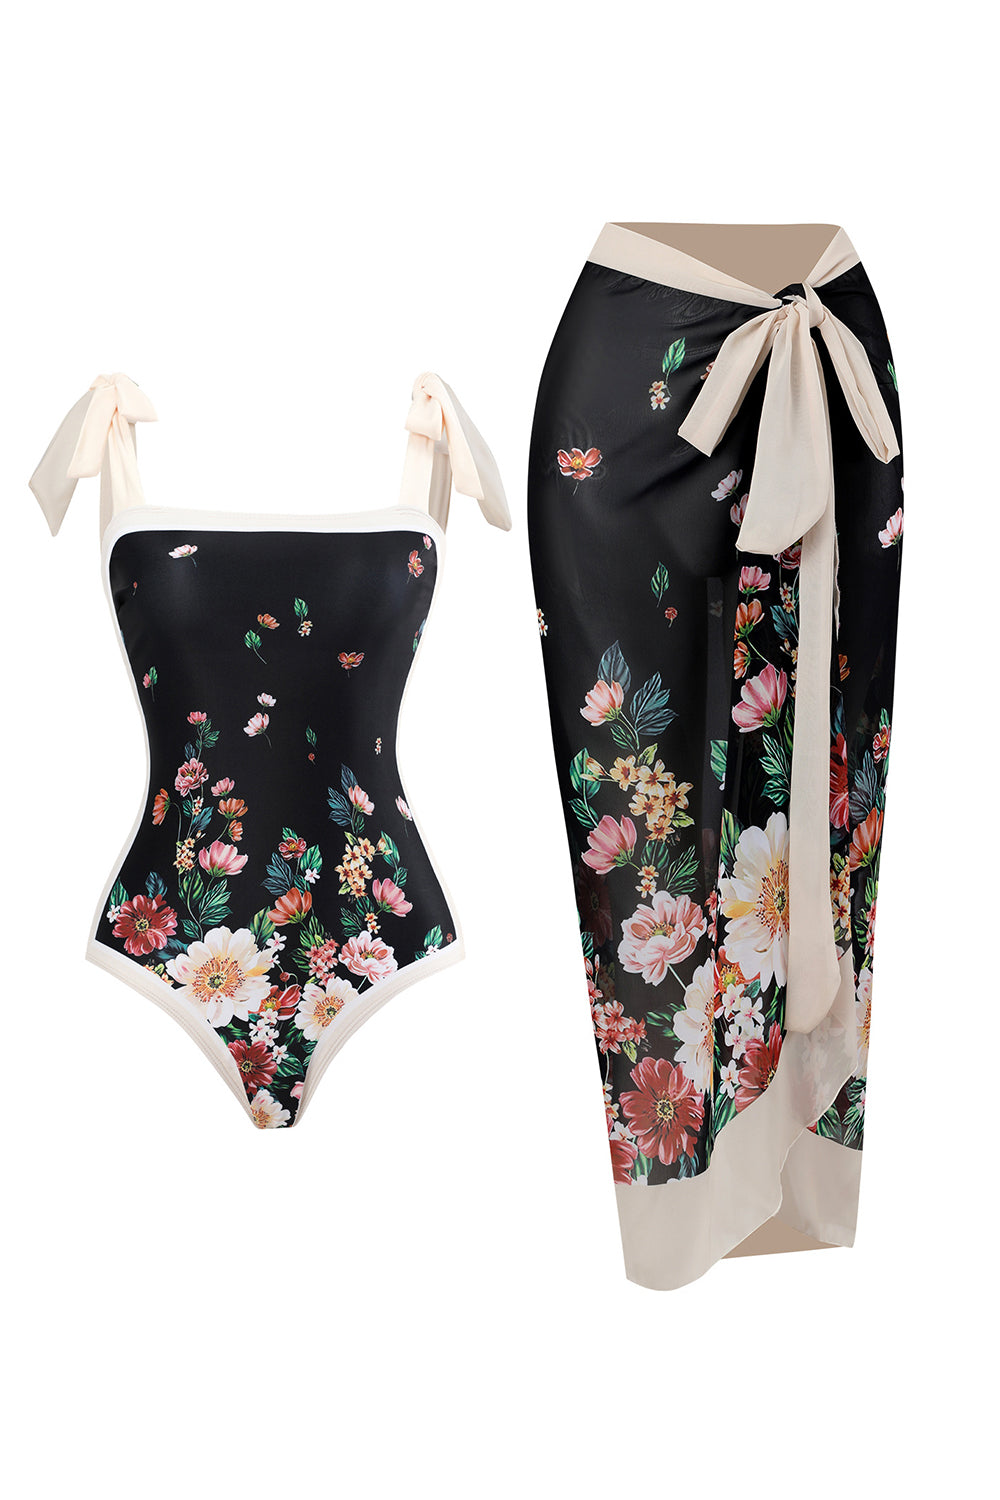 Zapaka Women Black One Piece Swimwear Set Vintage Printed Bikini with Beach  Skirt – ZAPAKA